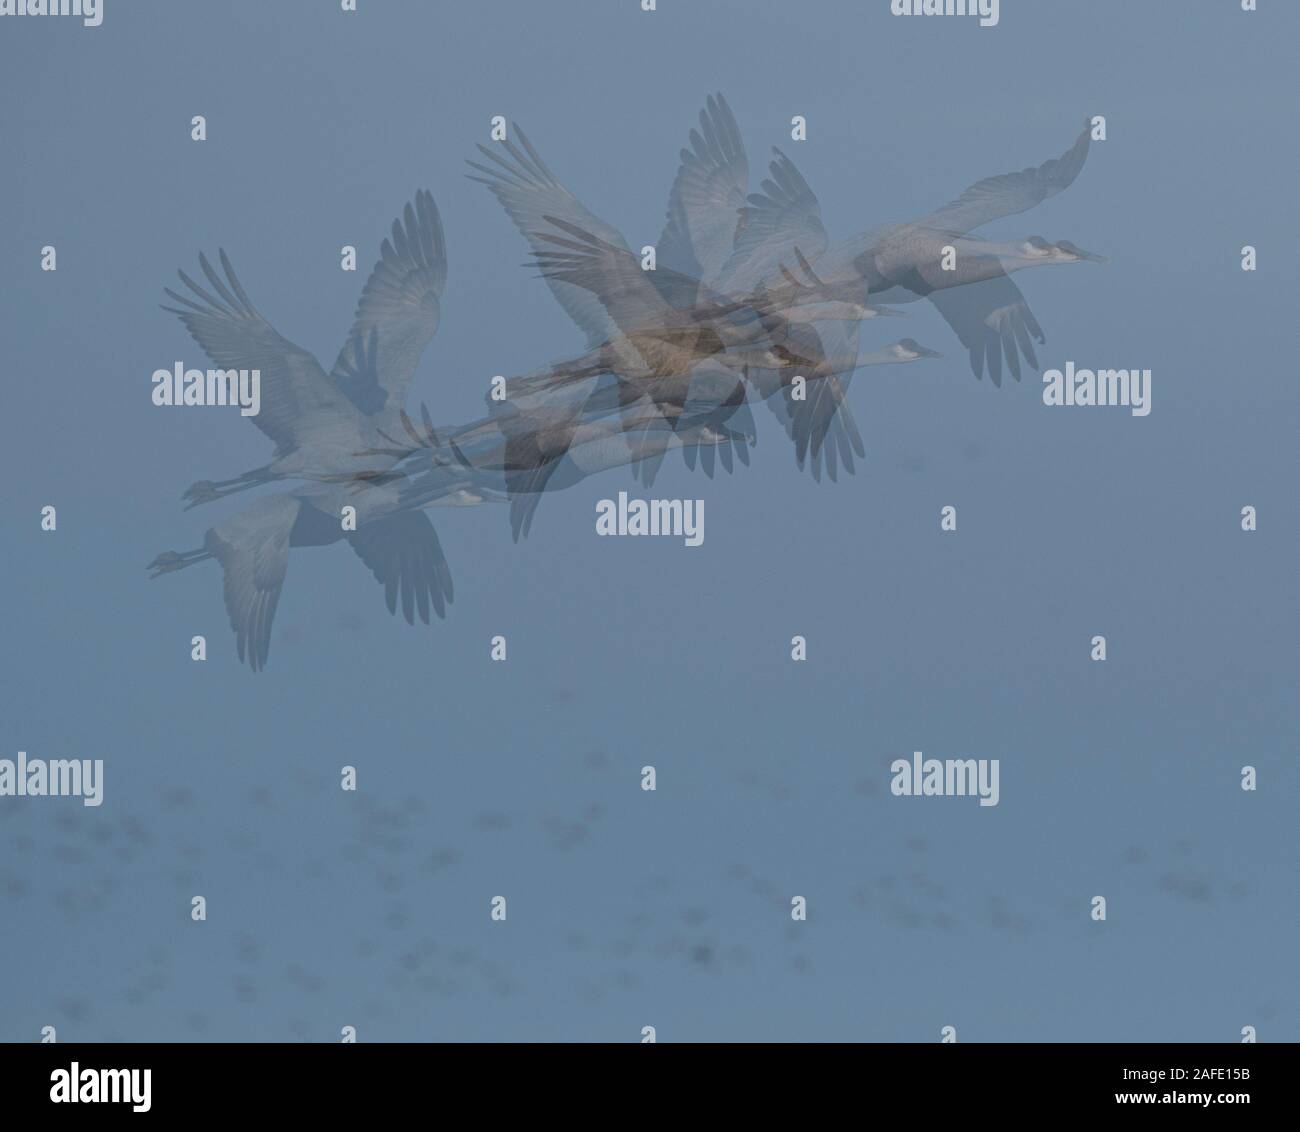 Abstrakte, mehrere Bild geschossen von kanadakranichen im Himmel mit kleinen Punkten der Schnee Gänse im Hintergrund Stockfoto